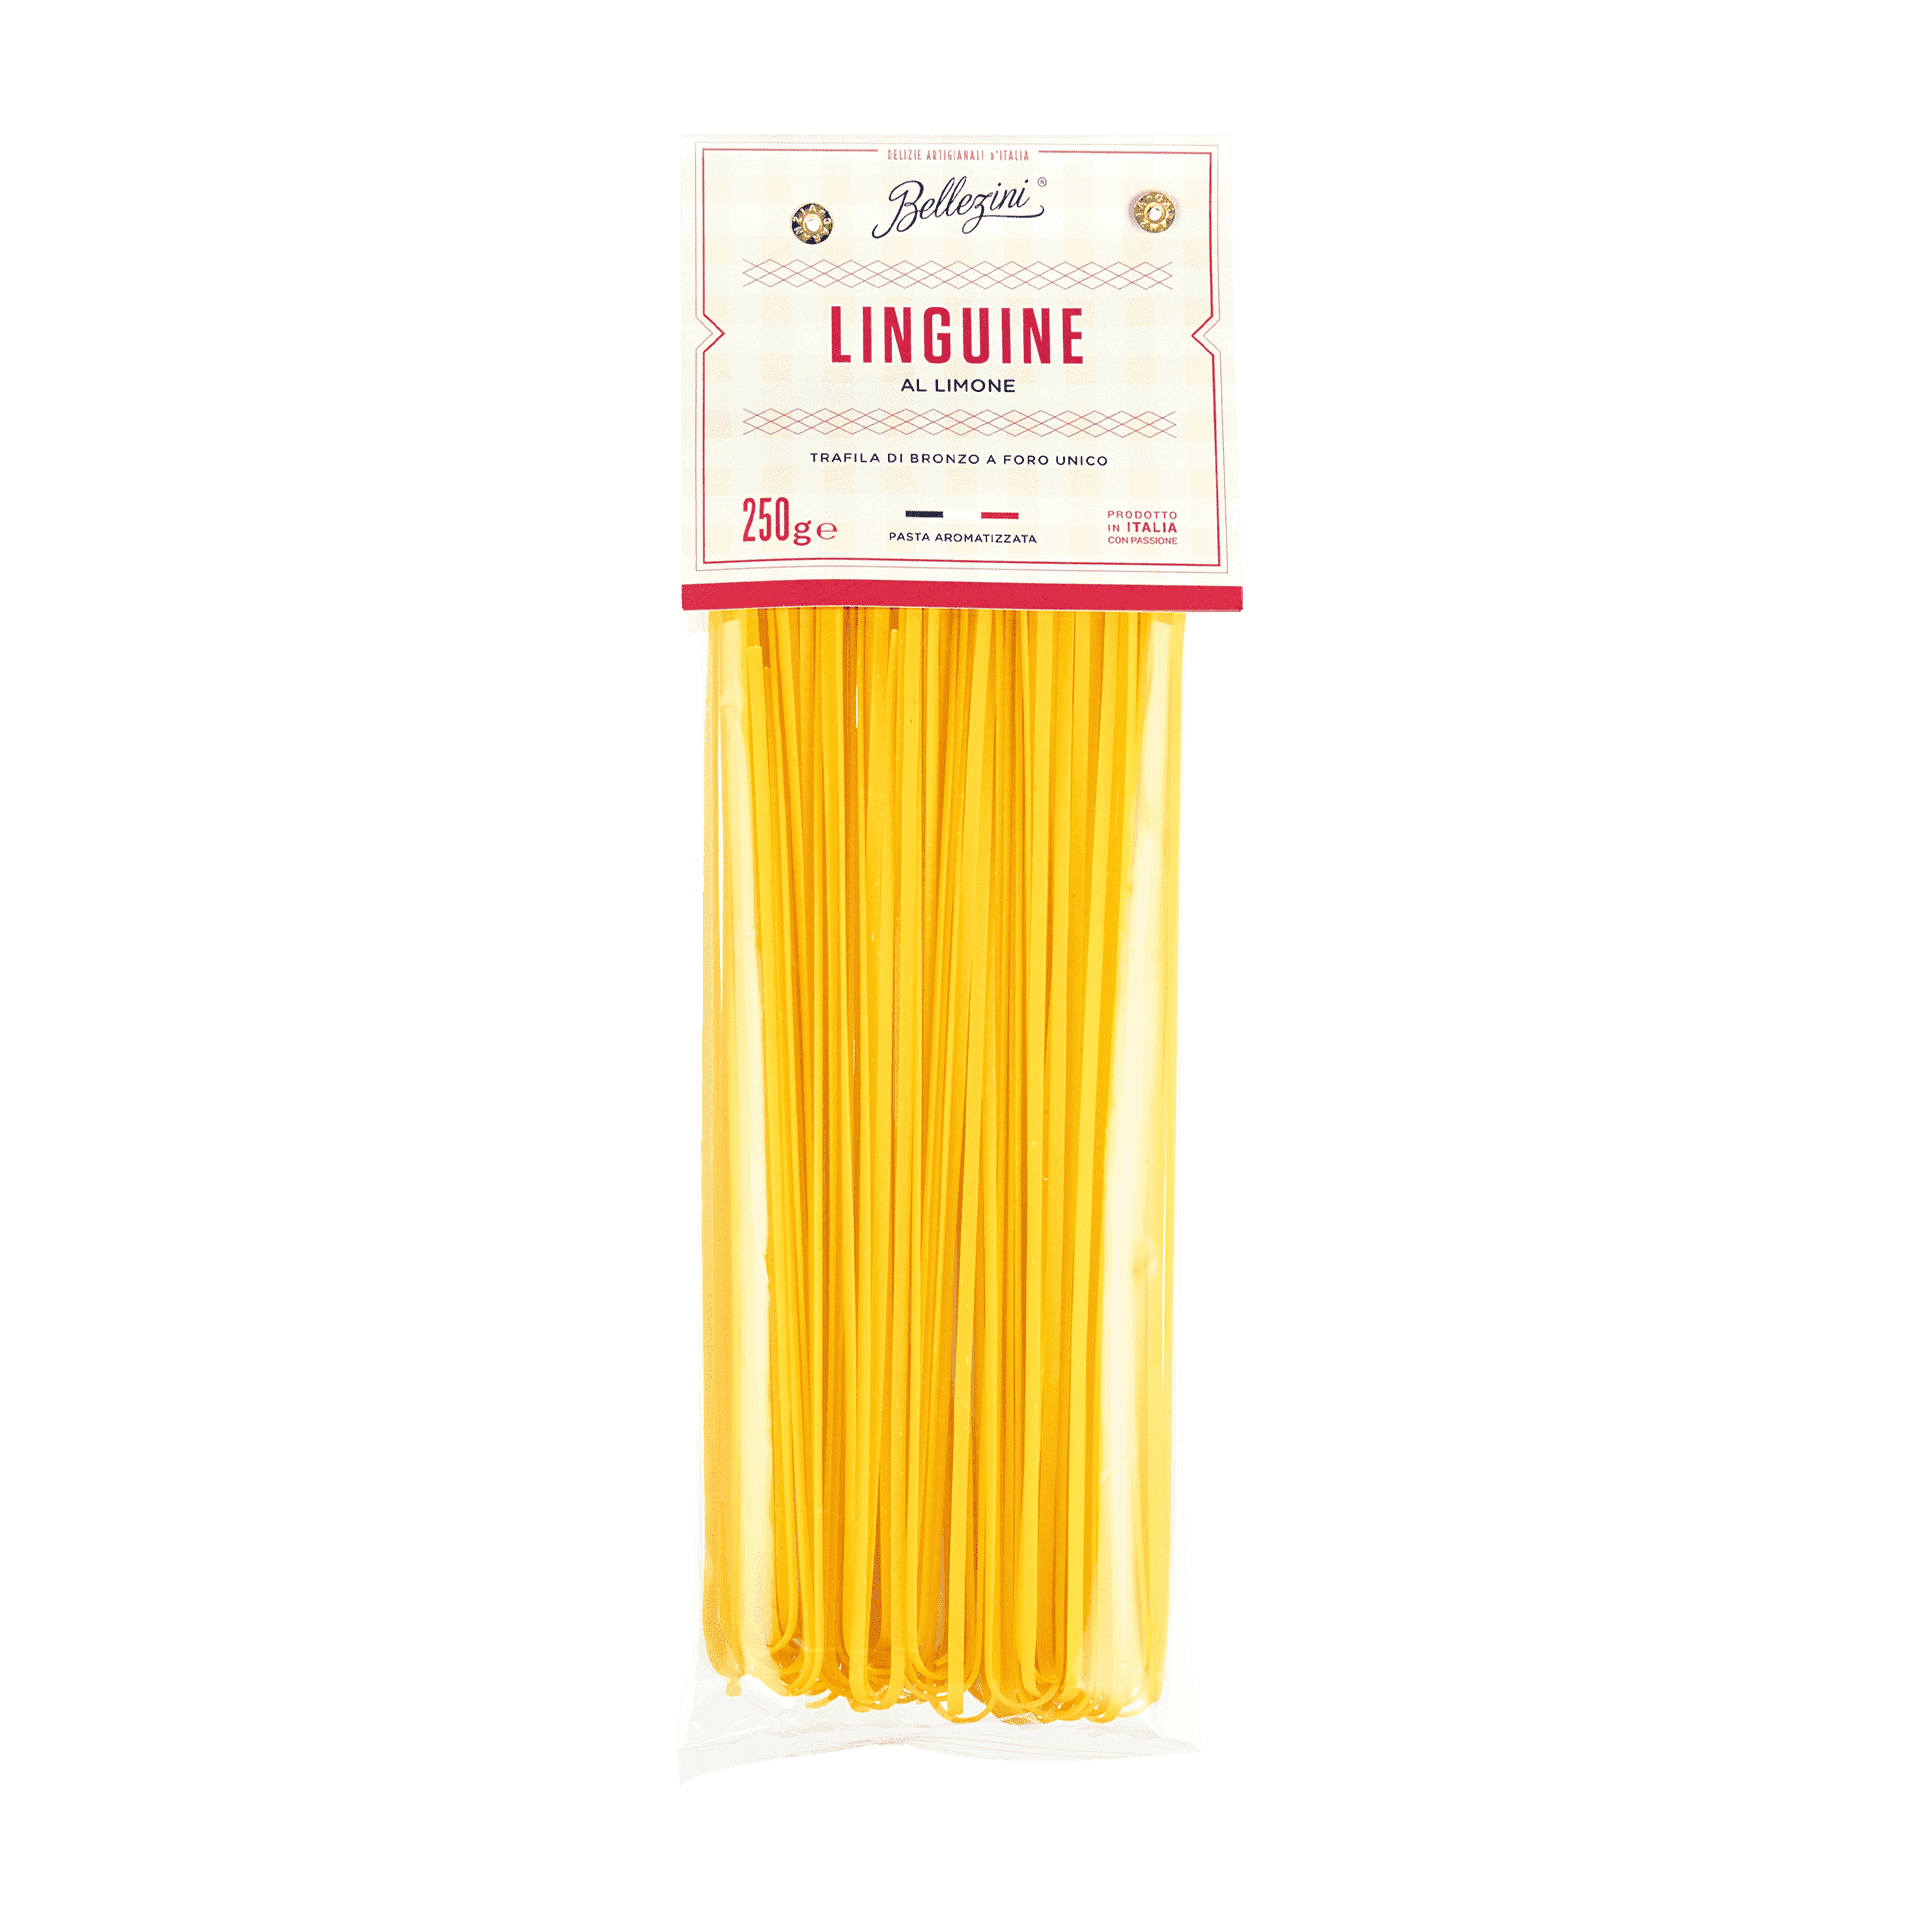 Linguine al Limone - Original italienische Pasta mit Zitrone